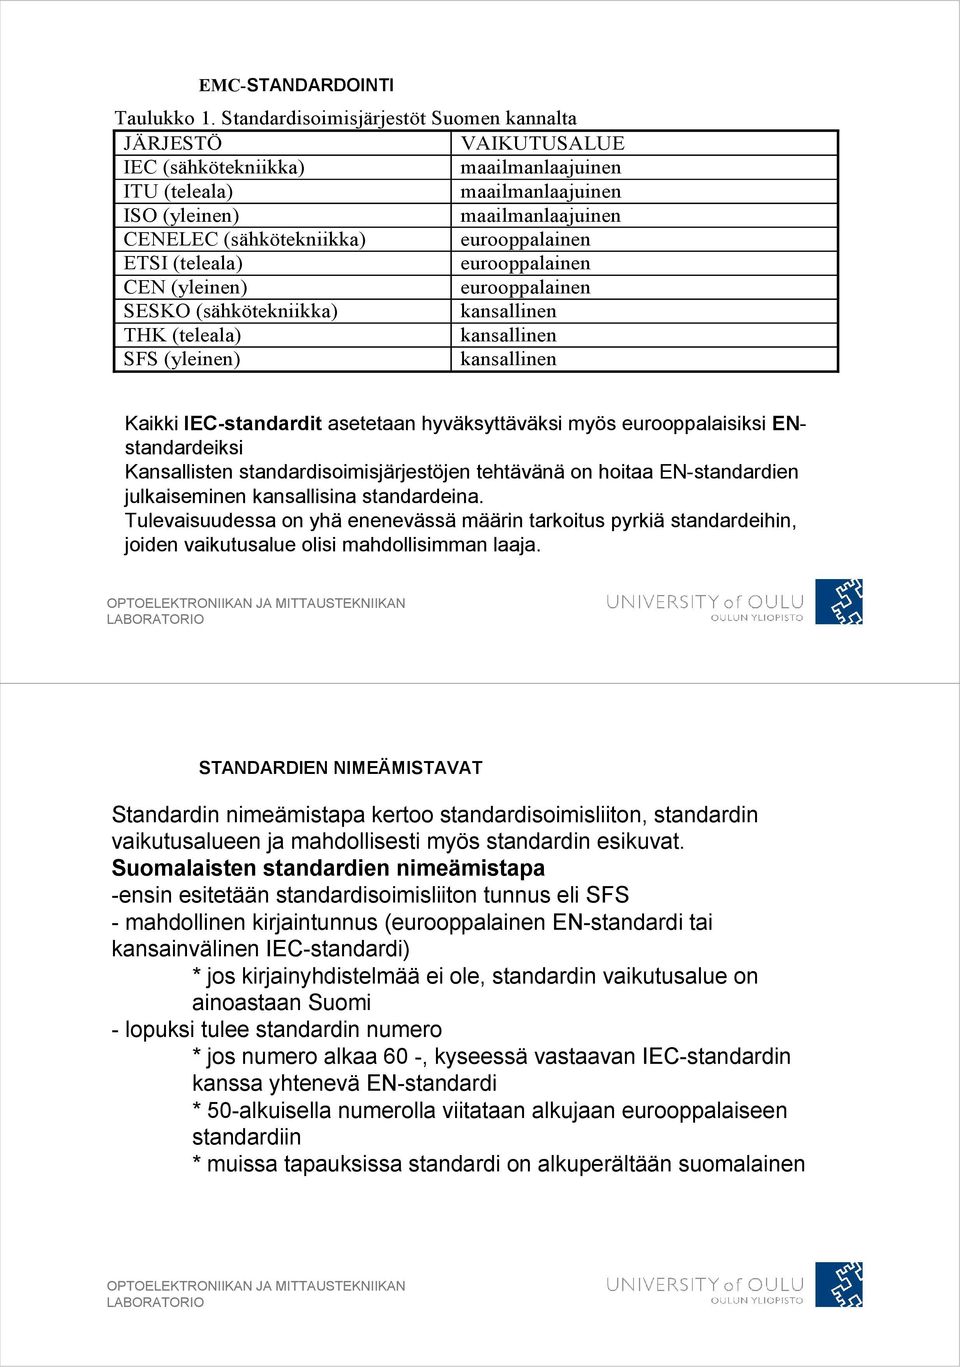 eurooppalainen ETSI (teleala) eurooppalainen CEN (yleinen) eurooppalainen SESKO (sähkötekniikka) kansallinen THK (teleala) kansallinen SFS (yleinen) kansallinen Kaikki IEC-standardit asetetaan